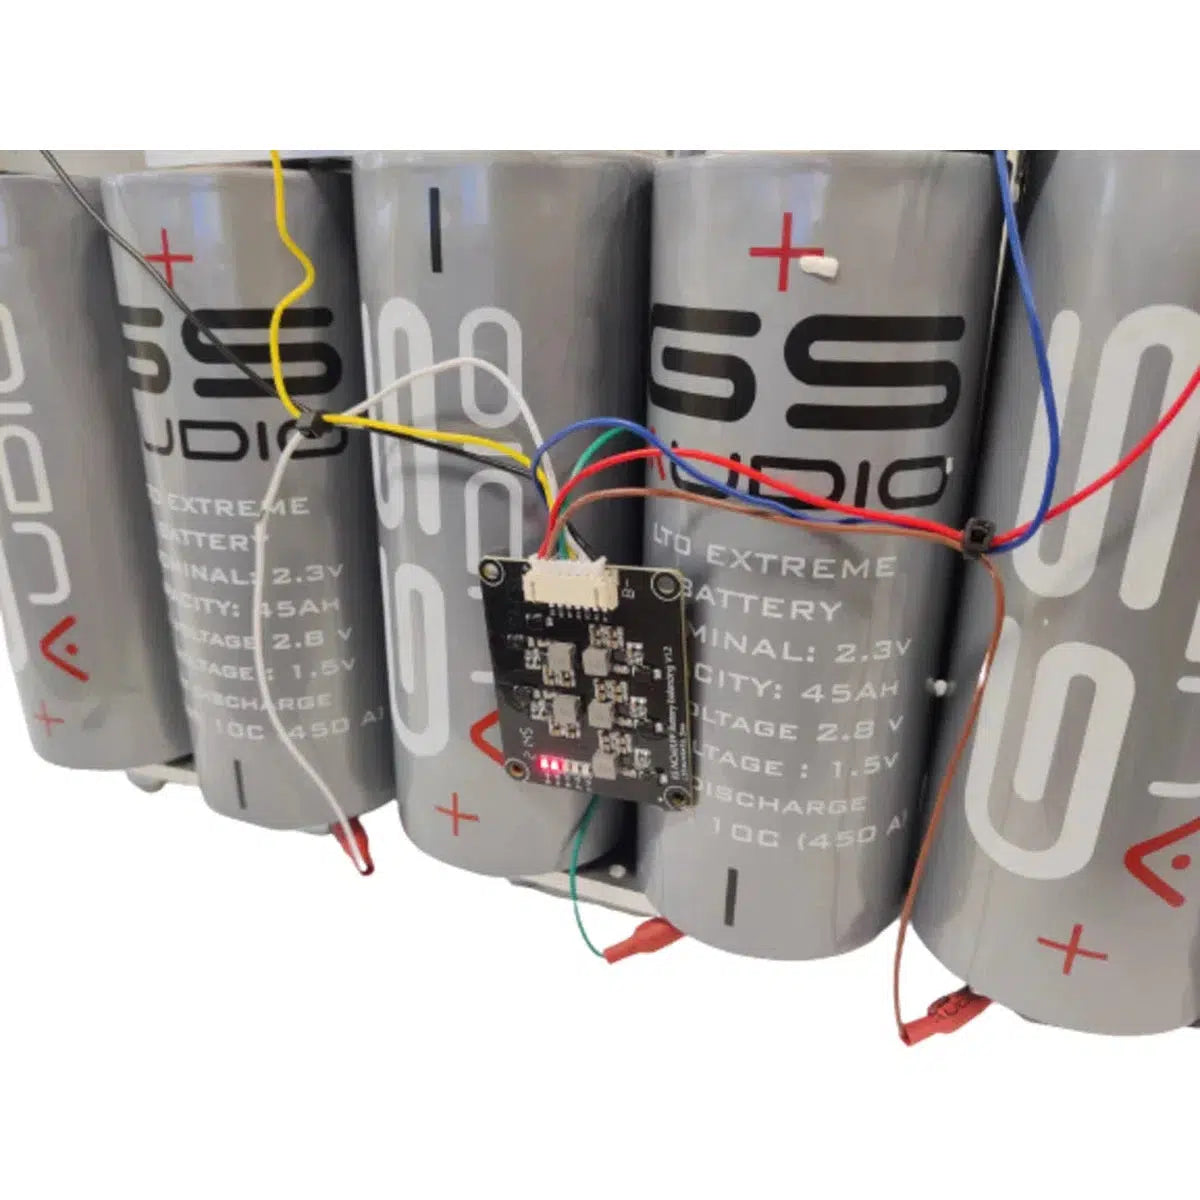 GS Audio-18 células LTO batería 120Ah/ 135Ah litio - LTO-Masori.de